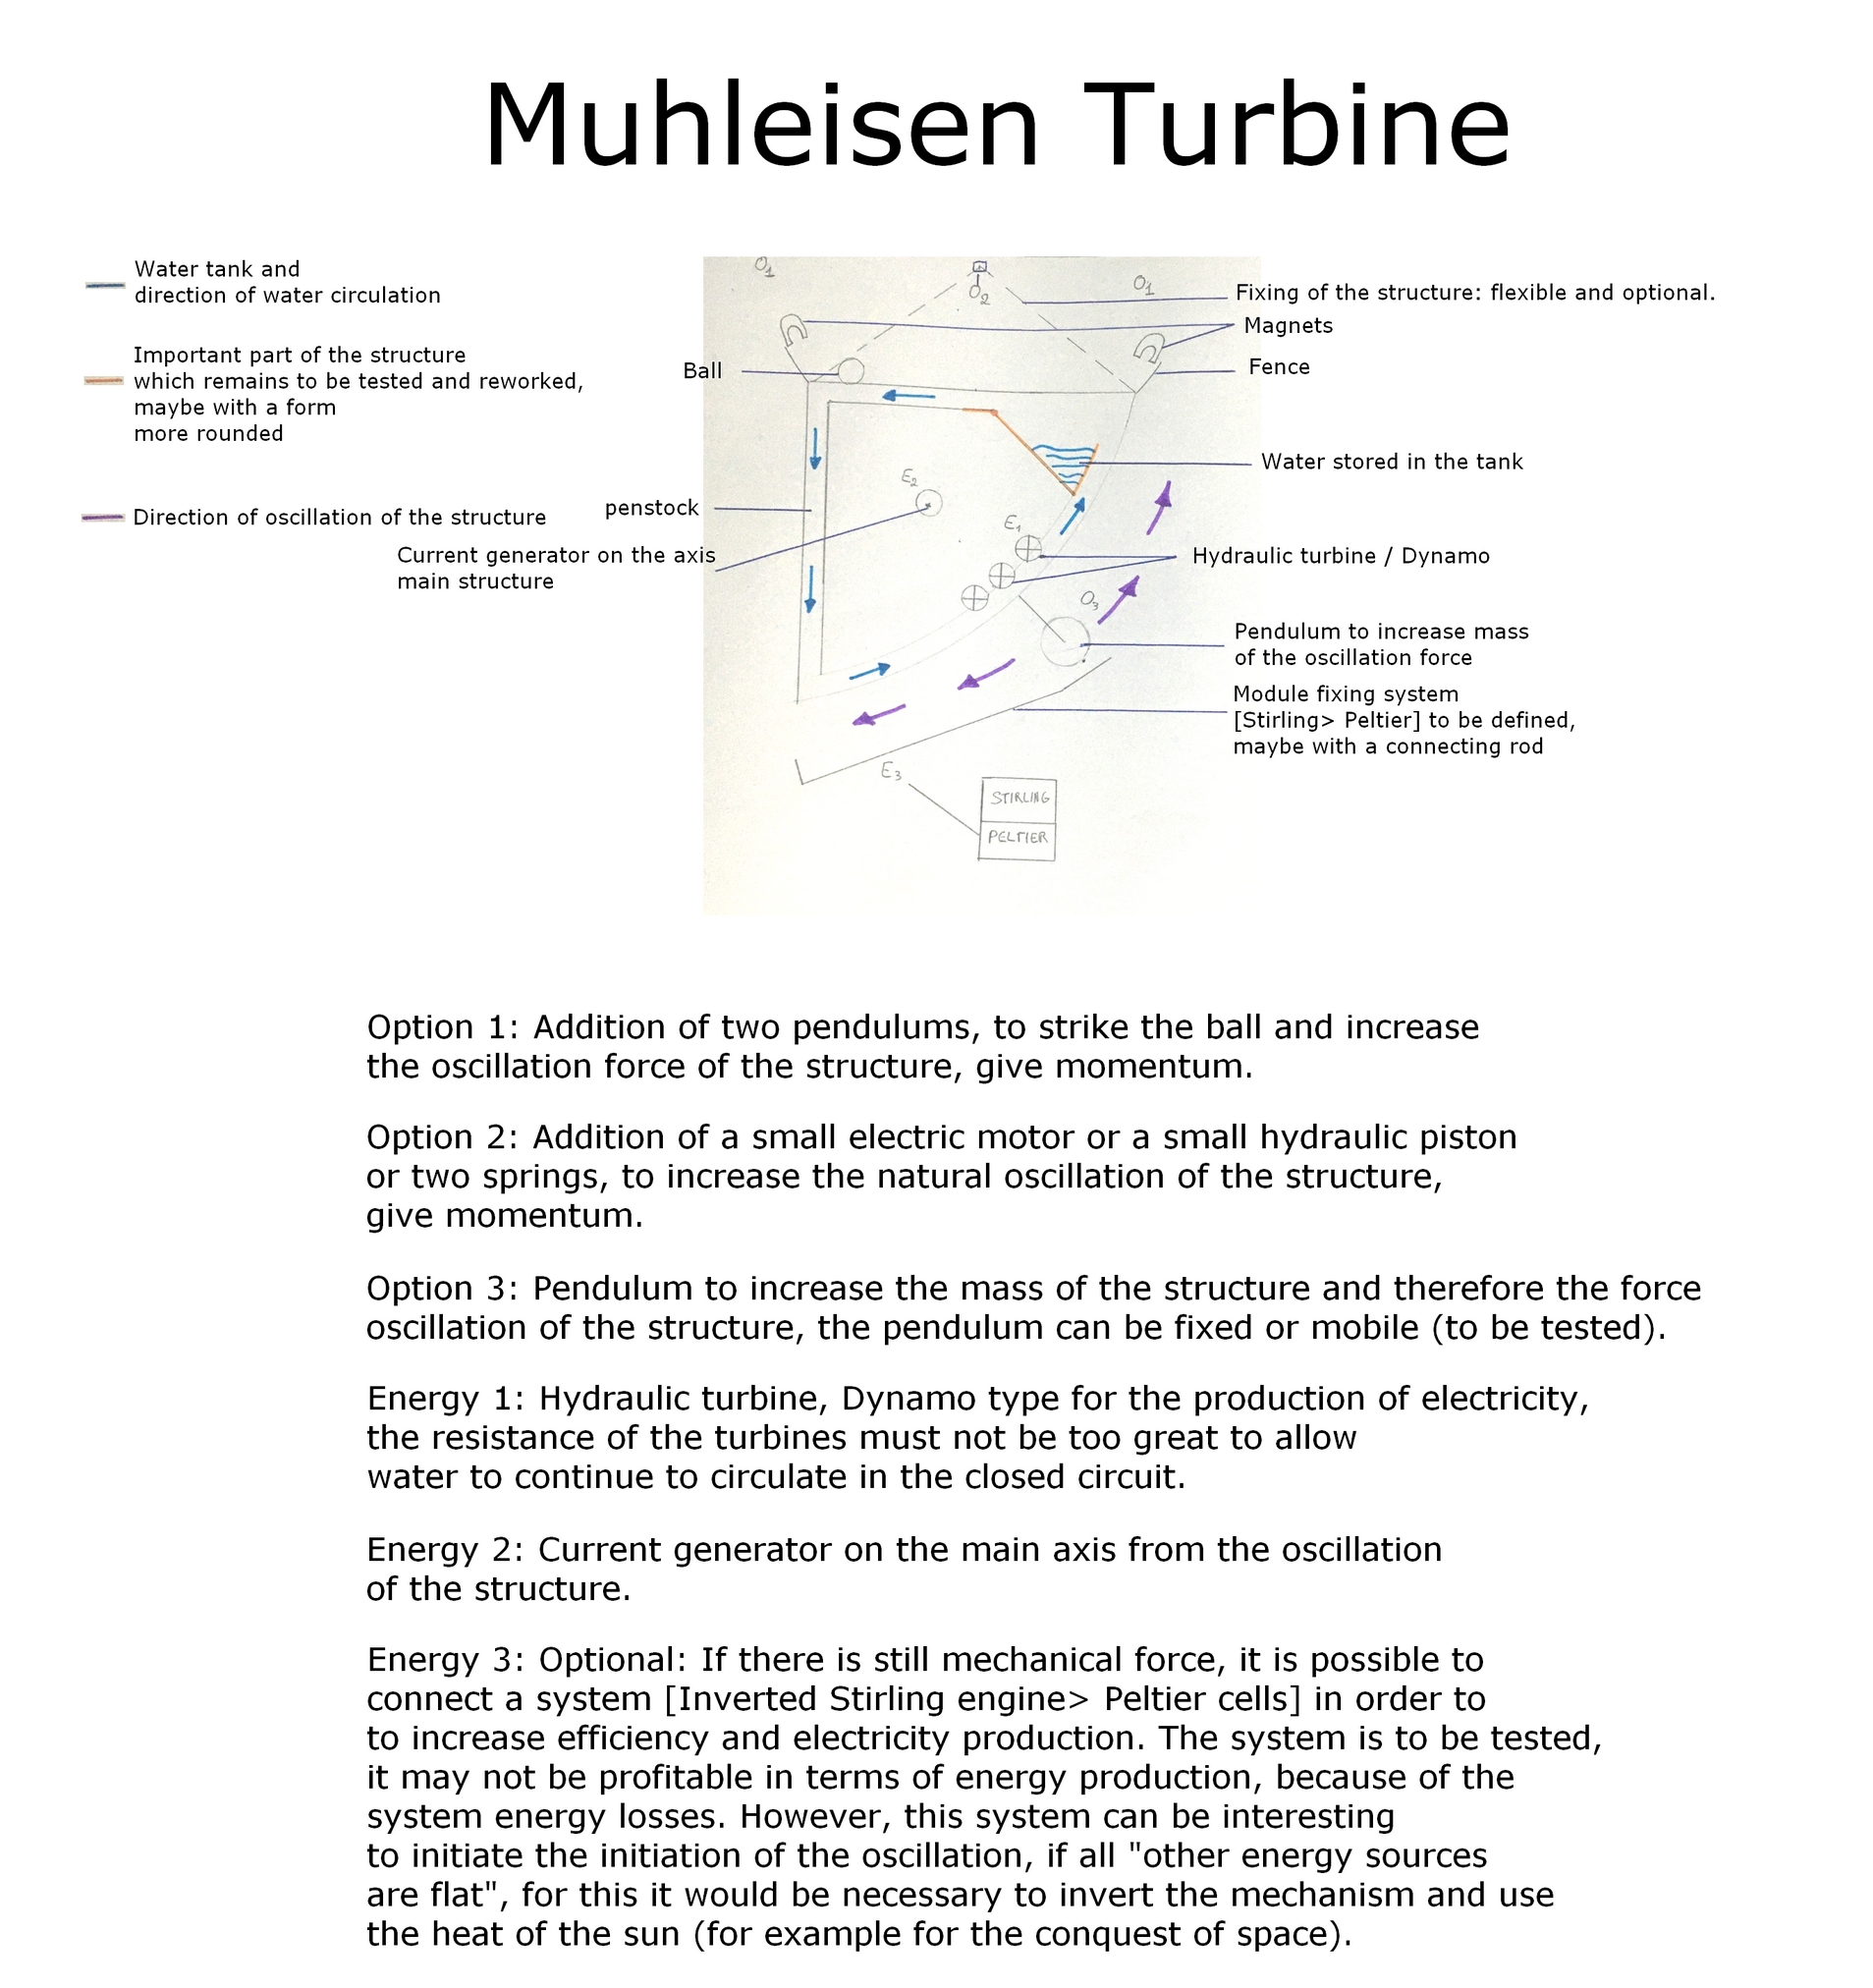 The Muhleisen Turbine first version